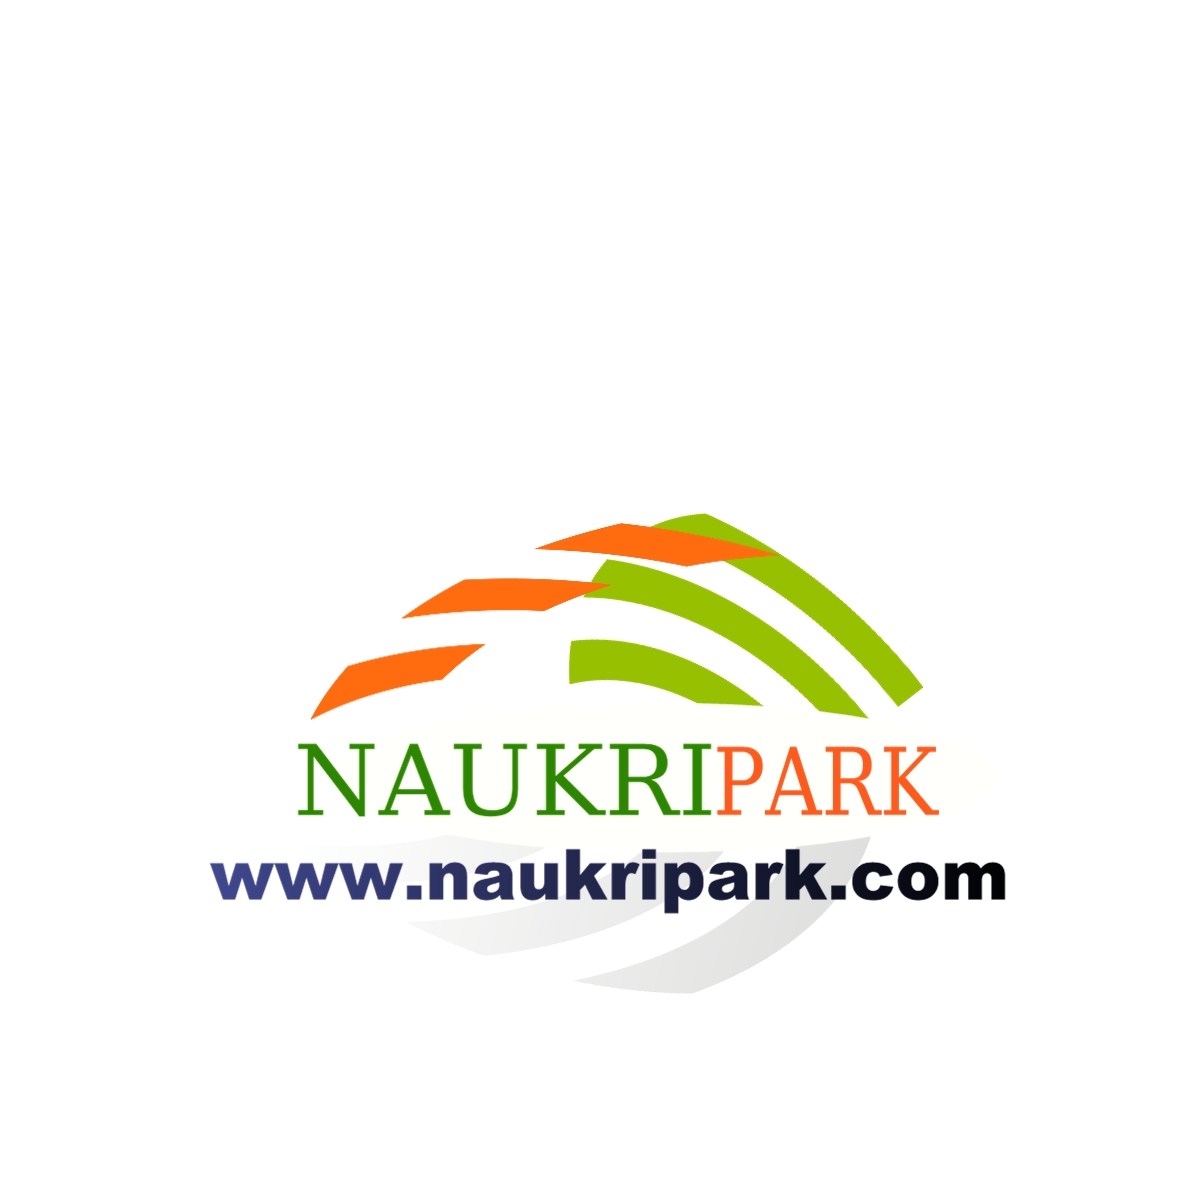 Naukripark.com Company Logo